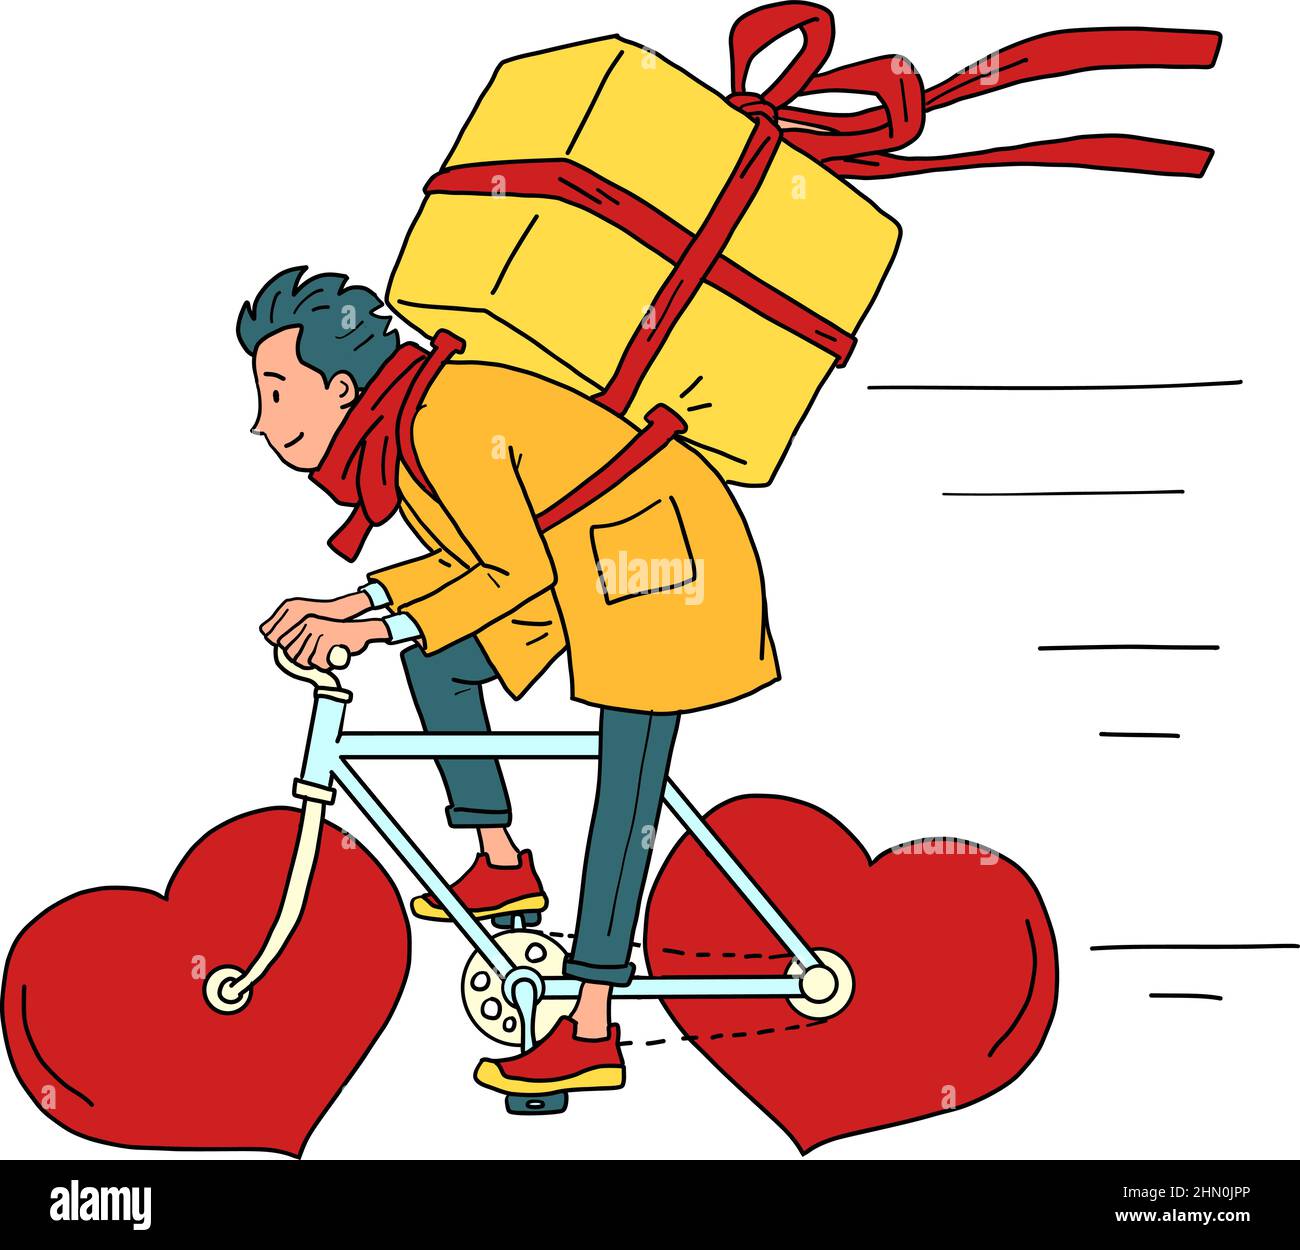 Consegna del cibo tramite corriere su una bicicletta gommata, San Valentino. Cuore rosso invece di ruote Illustrazione Vettoriale